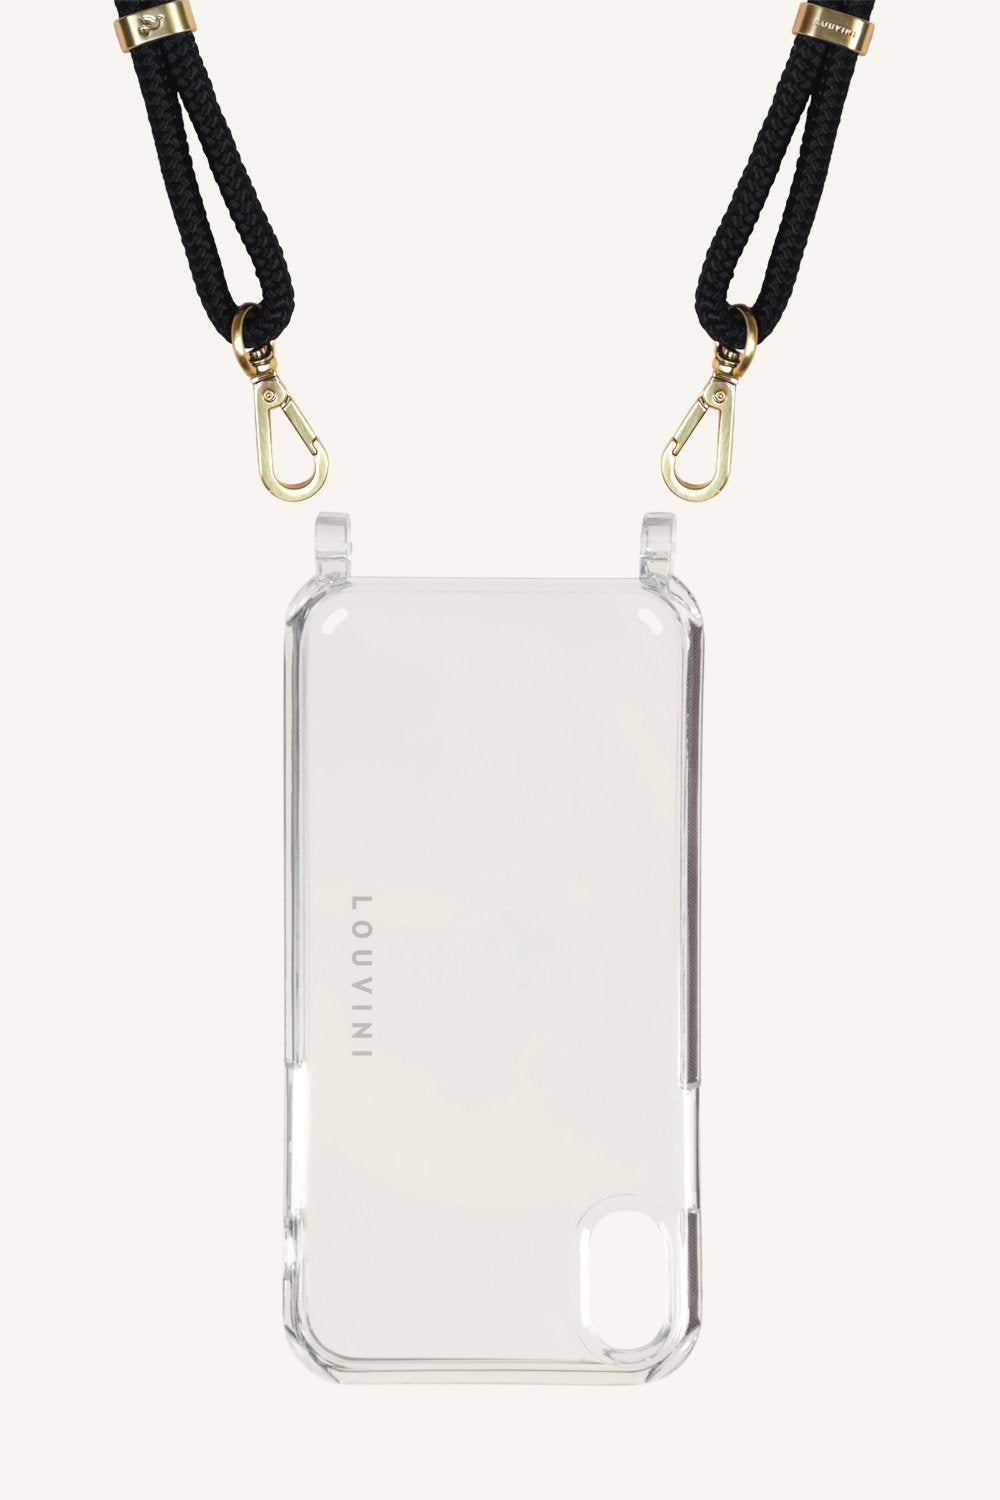 Charlie - Coque transparente avec Cordons pour iPhone XR - Louvini Paris